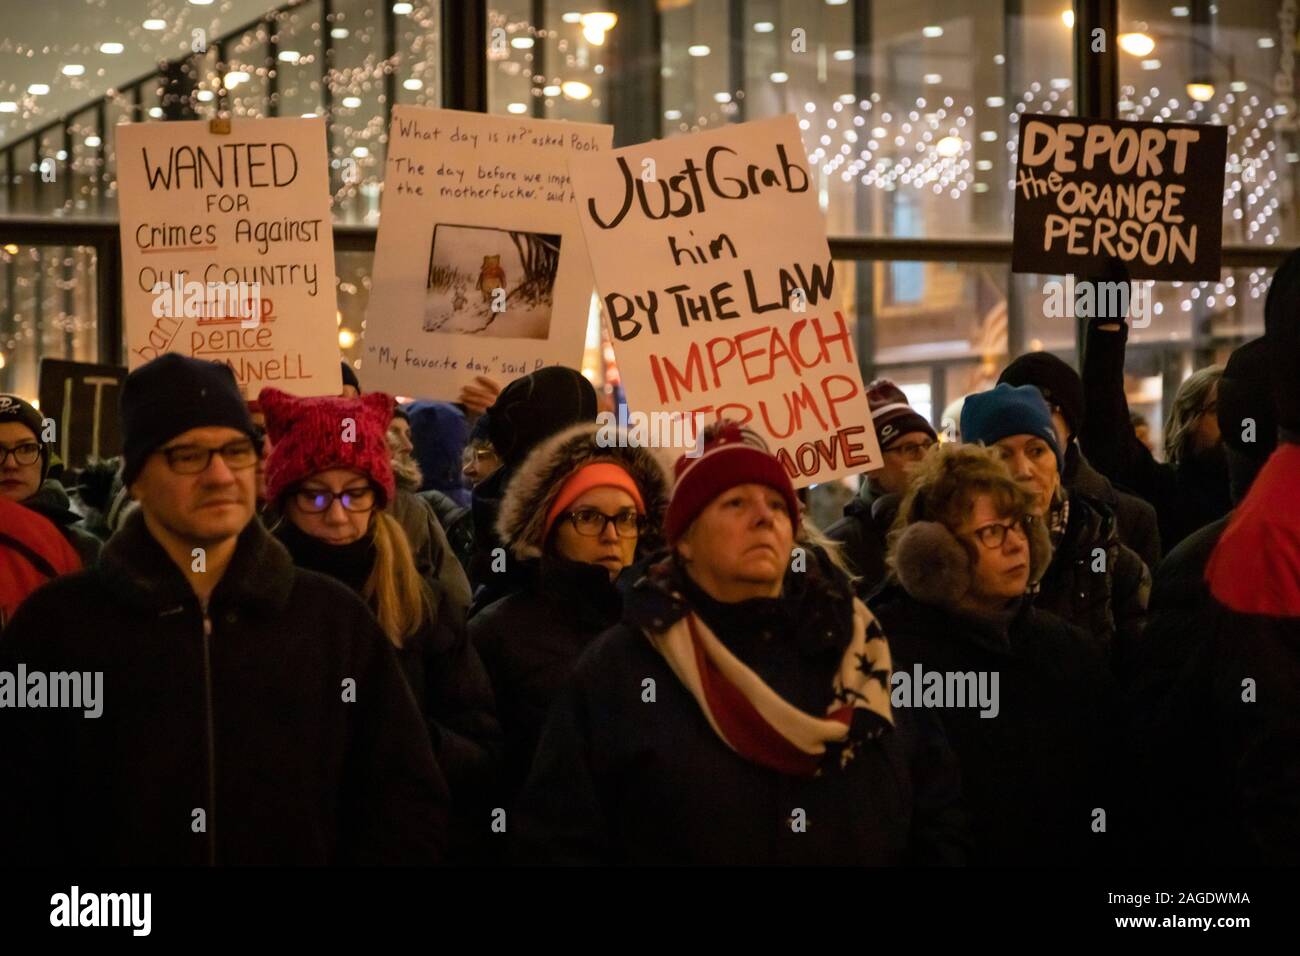 Chicago meeting de protestation à l'appui de l'impeachment du président Donald Trump, qui a eu lieu dans les Plaza sur une journée froide, le jour avant le vote de destitution doit avoir lieu. Banque D'Images